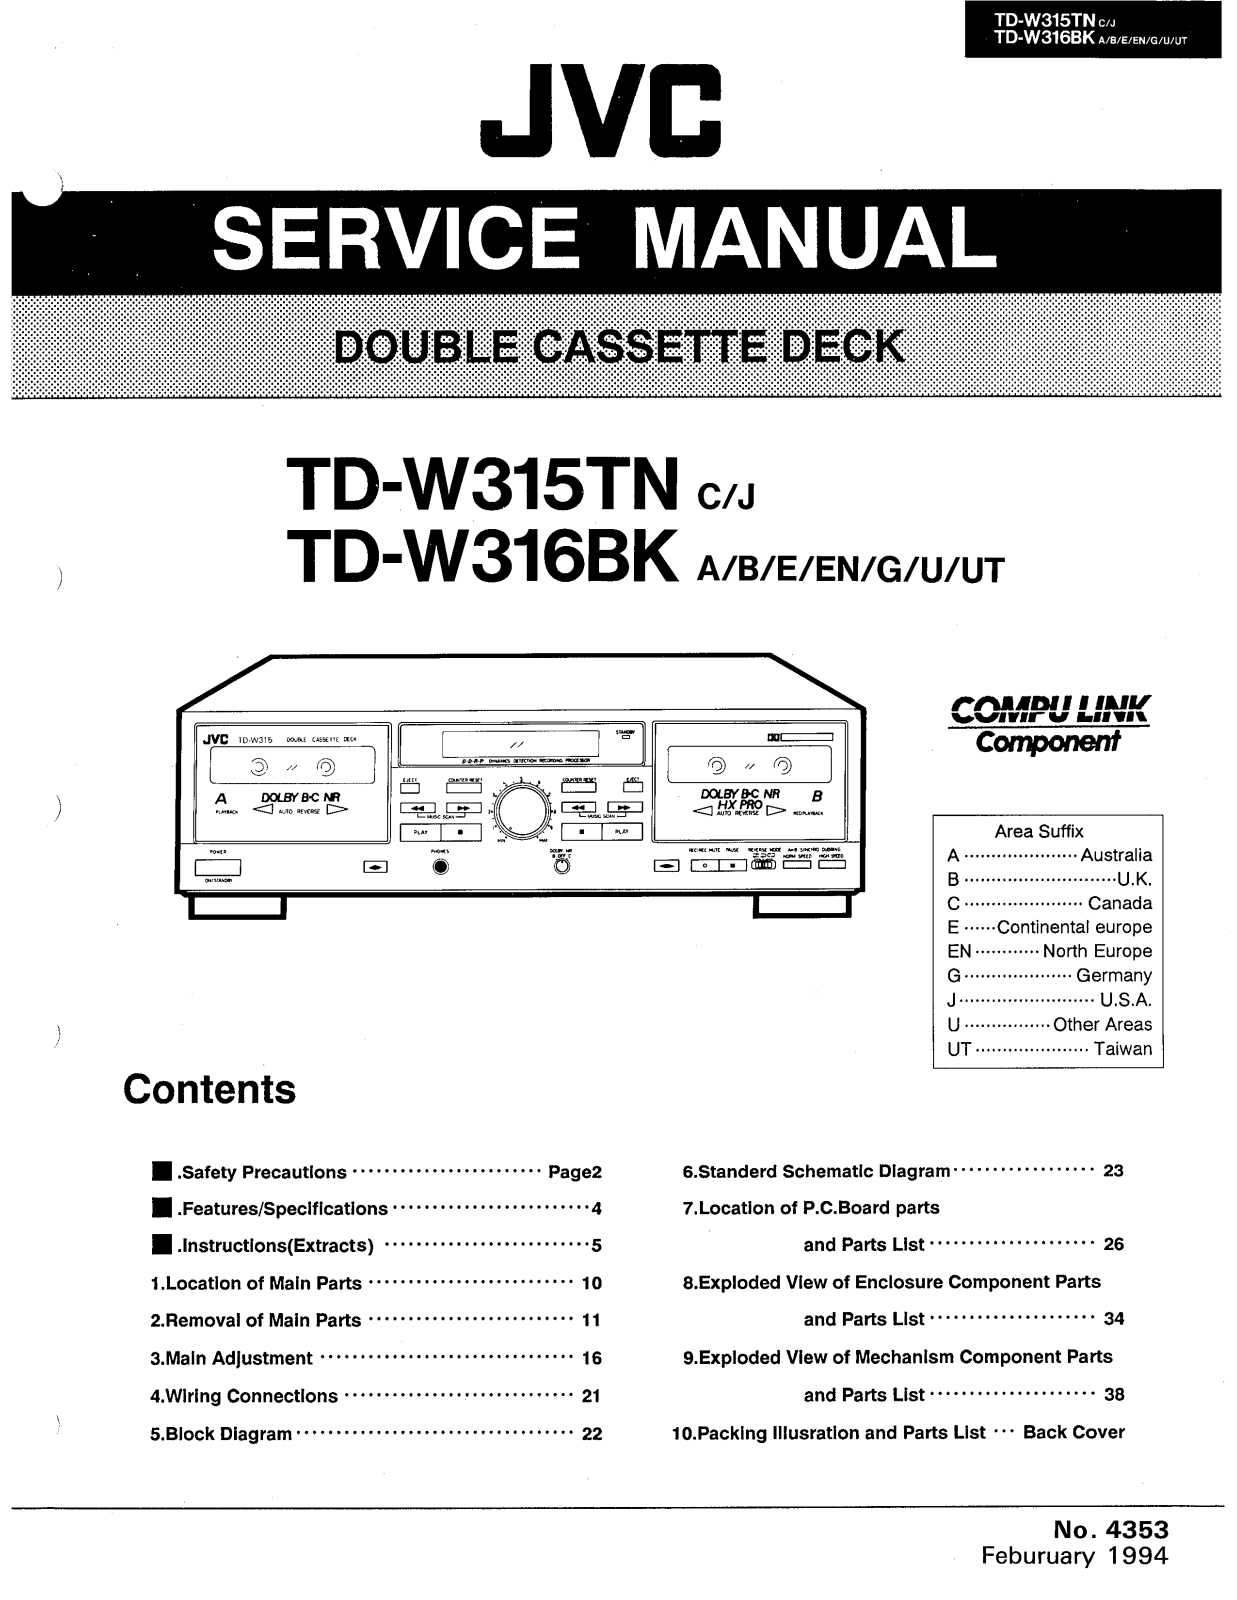 Jvc TD-W316-BK, TD-W315-TN Service Manual